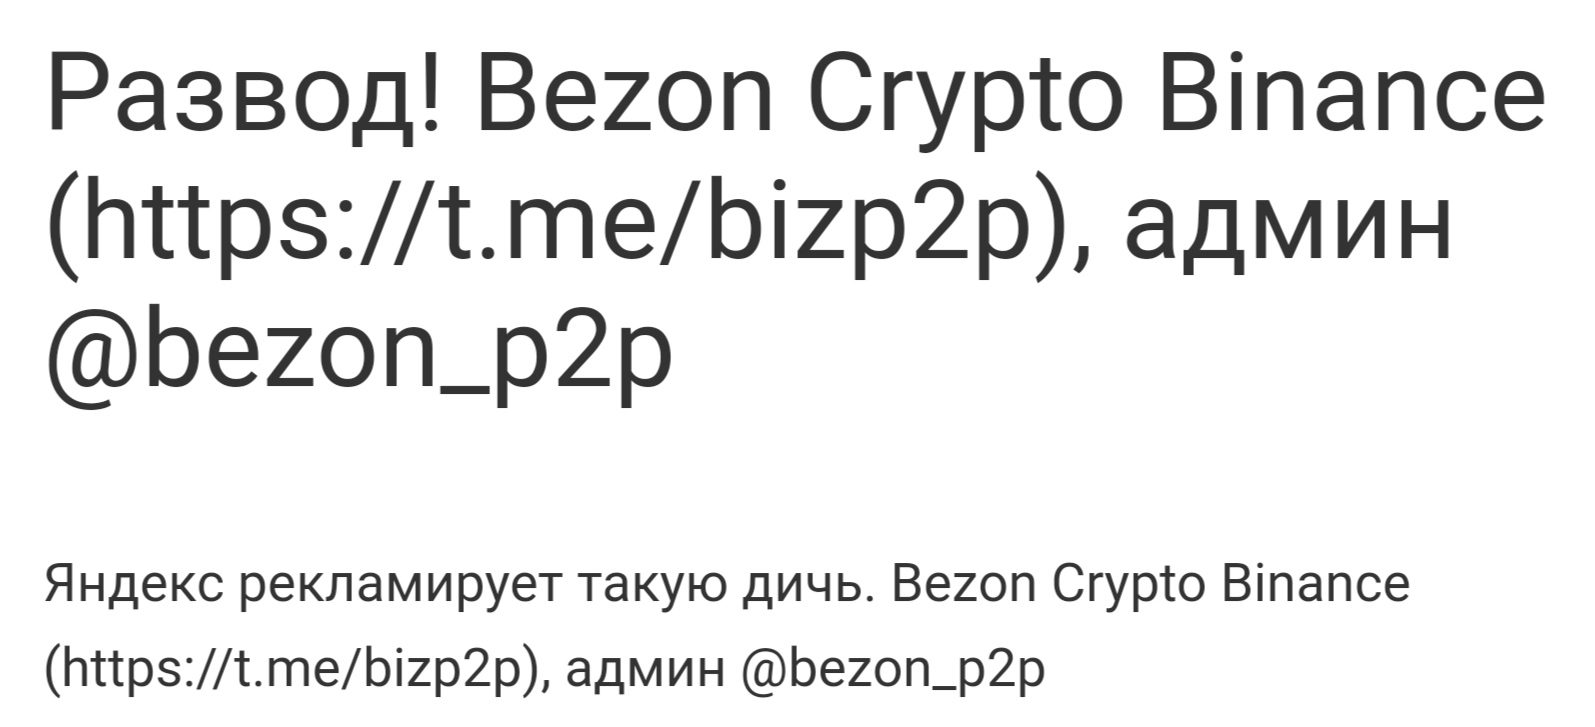 Bezon Crypto Binance отзывы